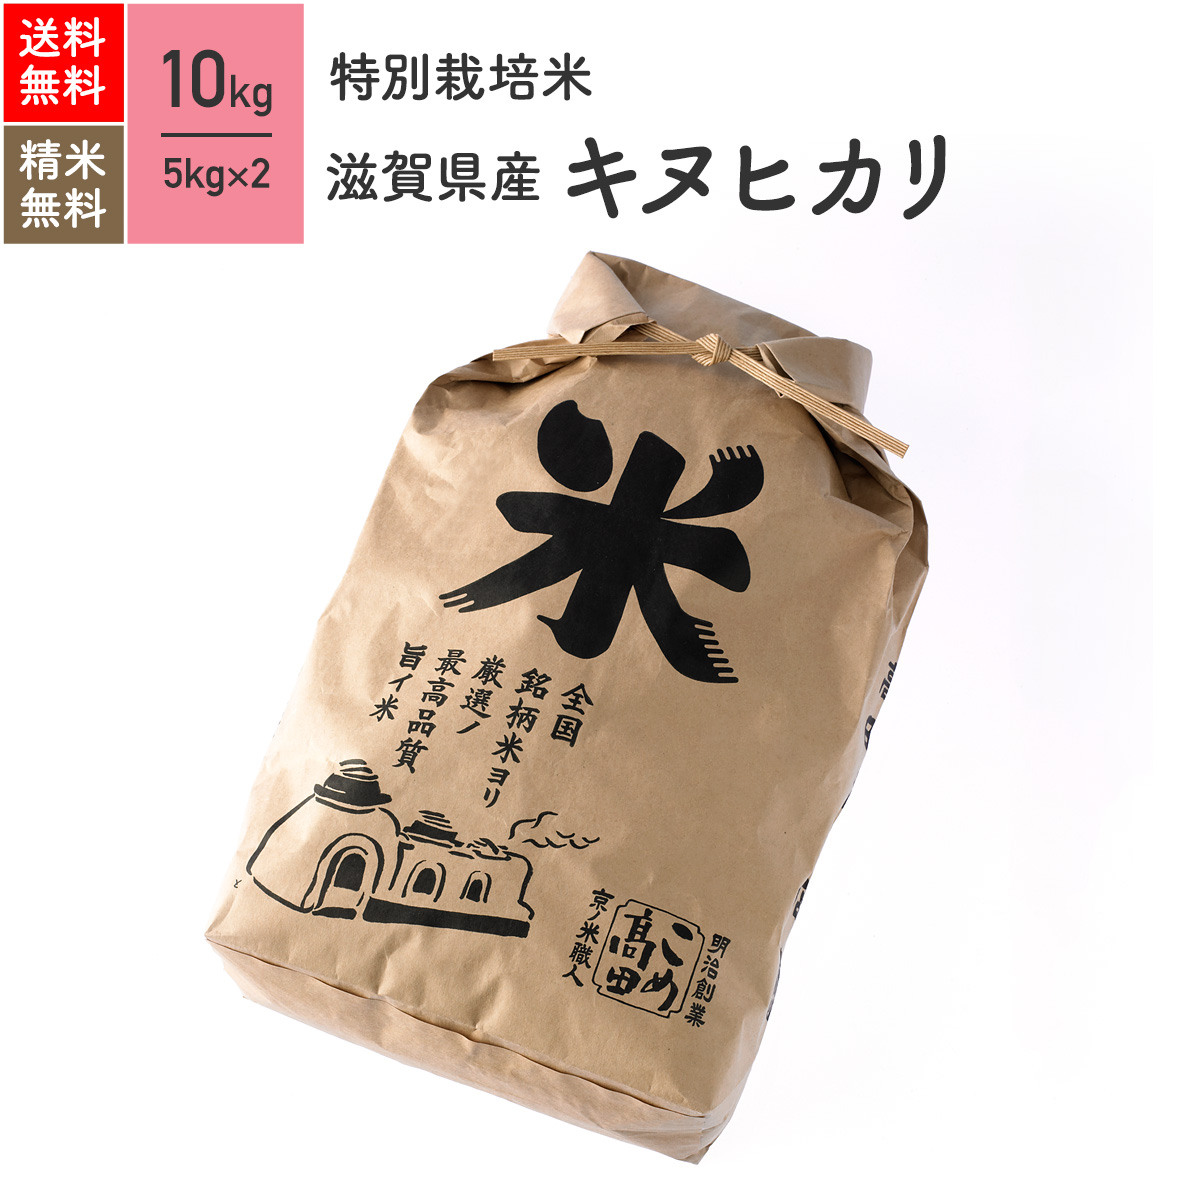 2021人気No.1の 福岡県産米元気つくし 玄米25kg お米 玄米 厳選ブランド米